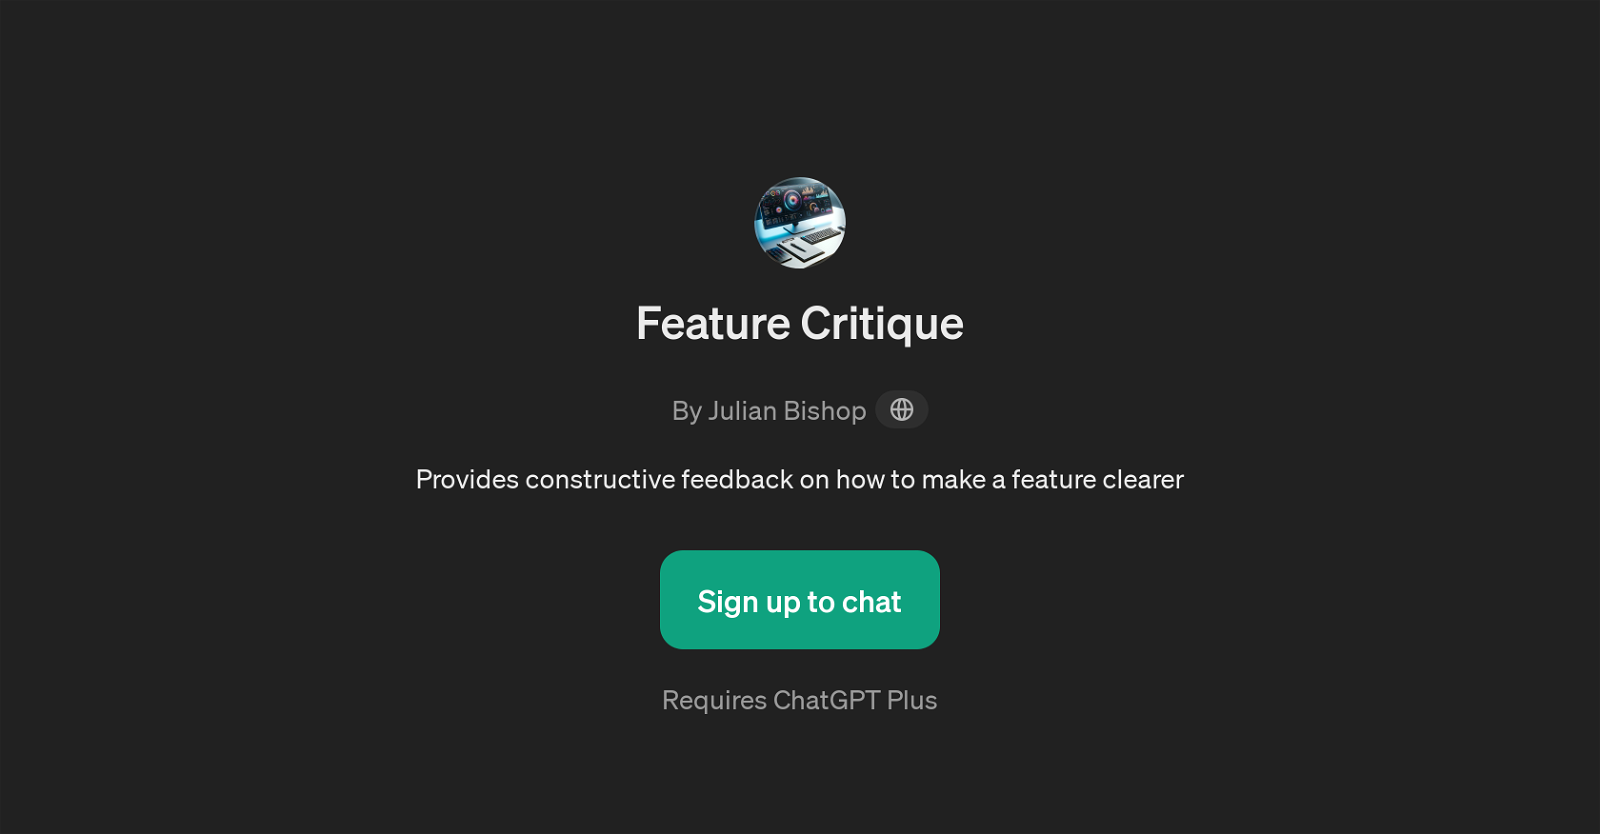 Feature Critique website